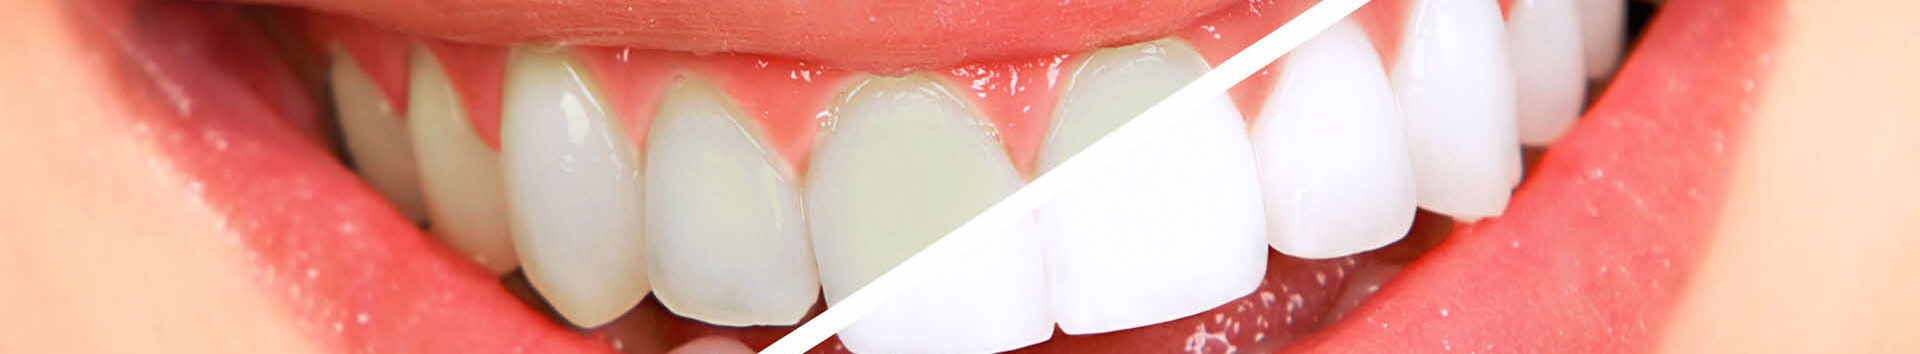 Branqueamento dental: Comece o ano com dentes brancos